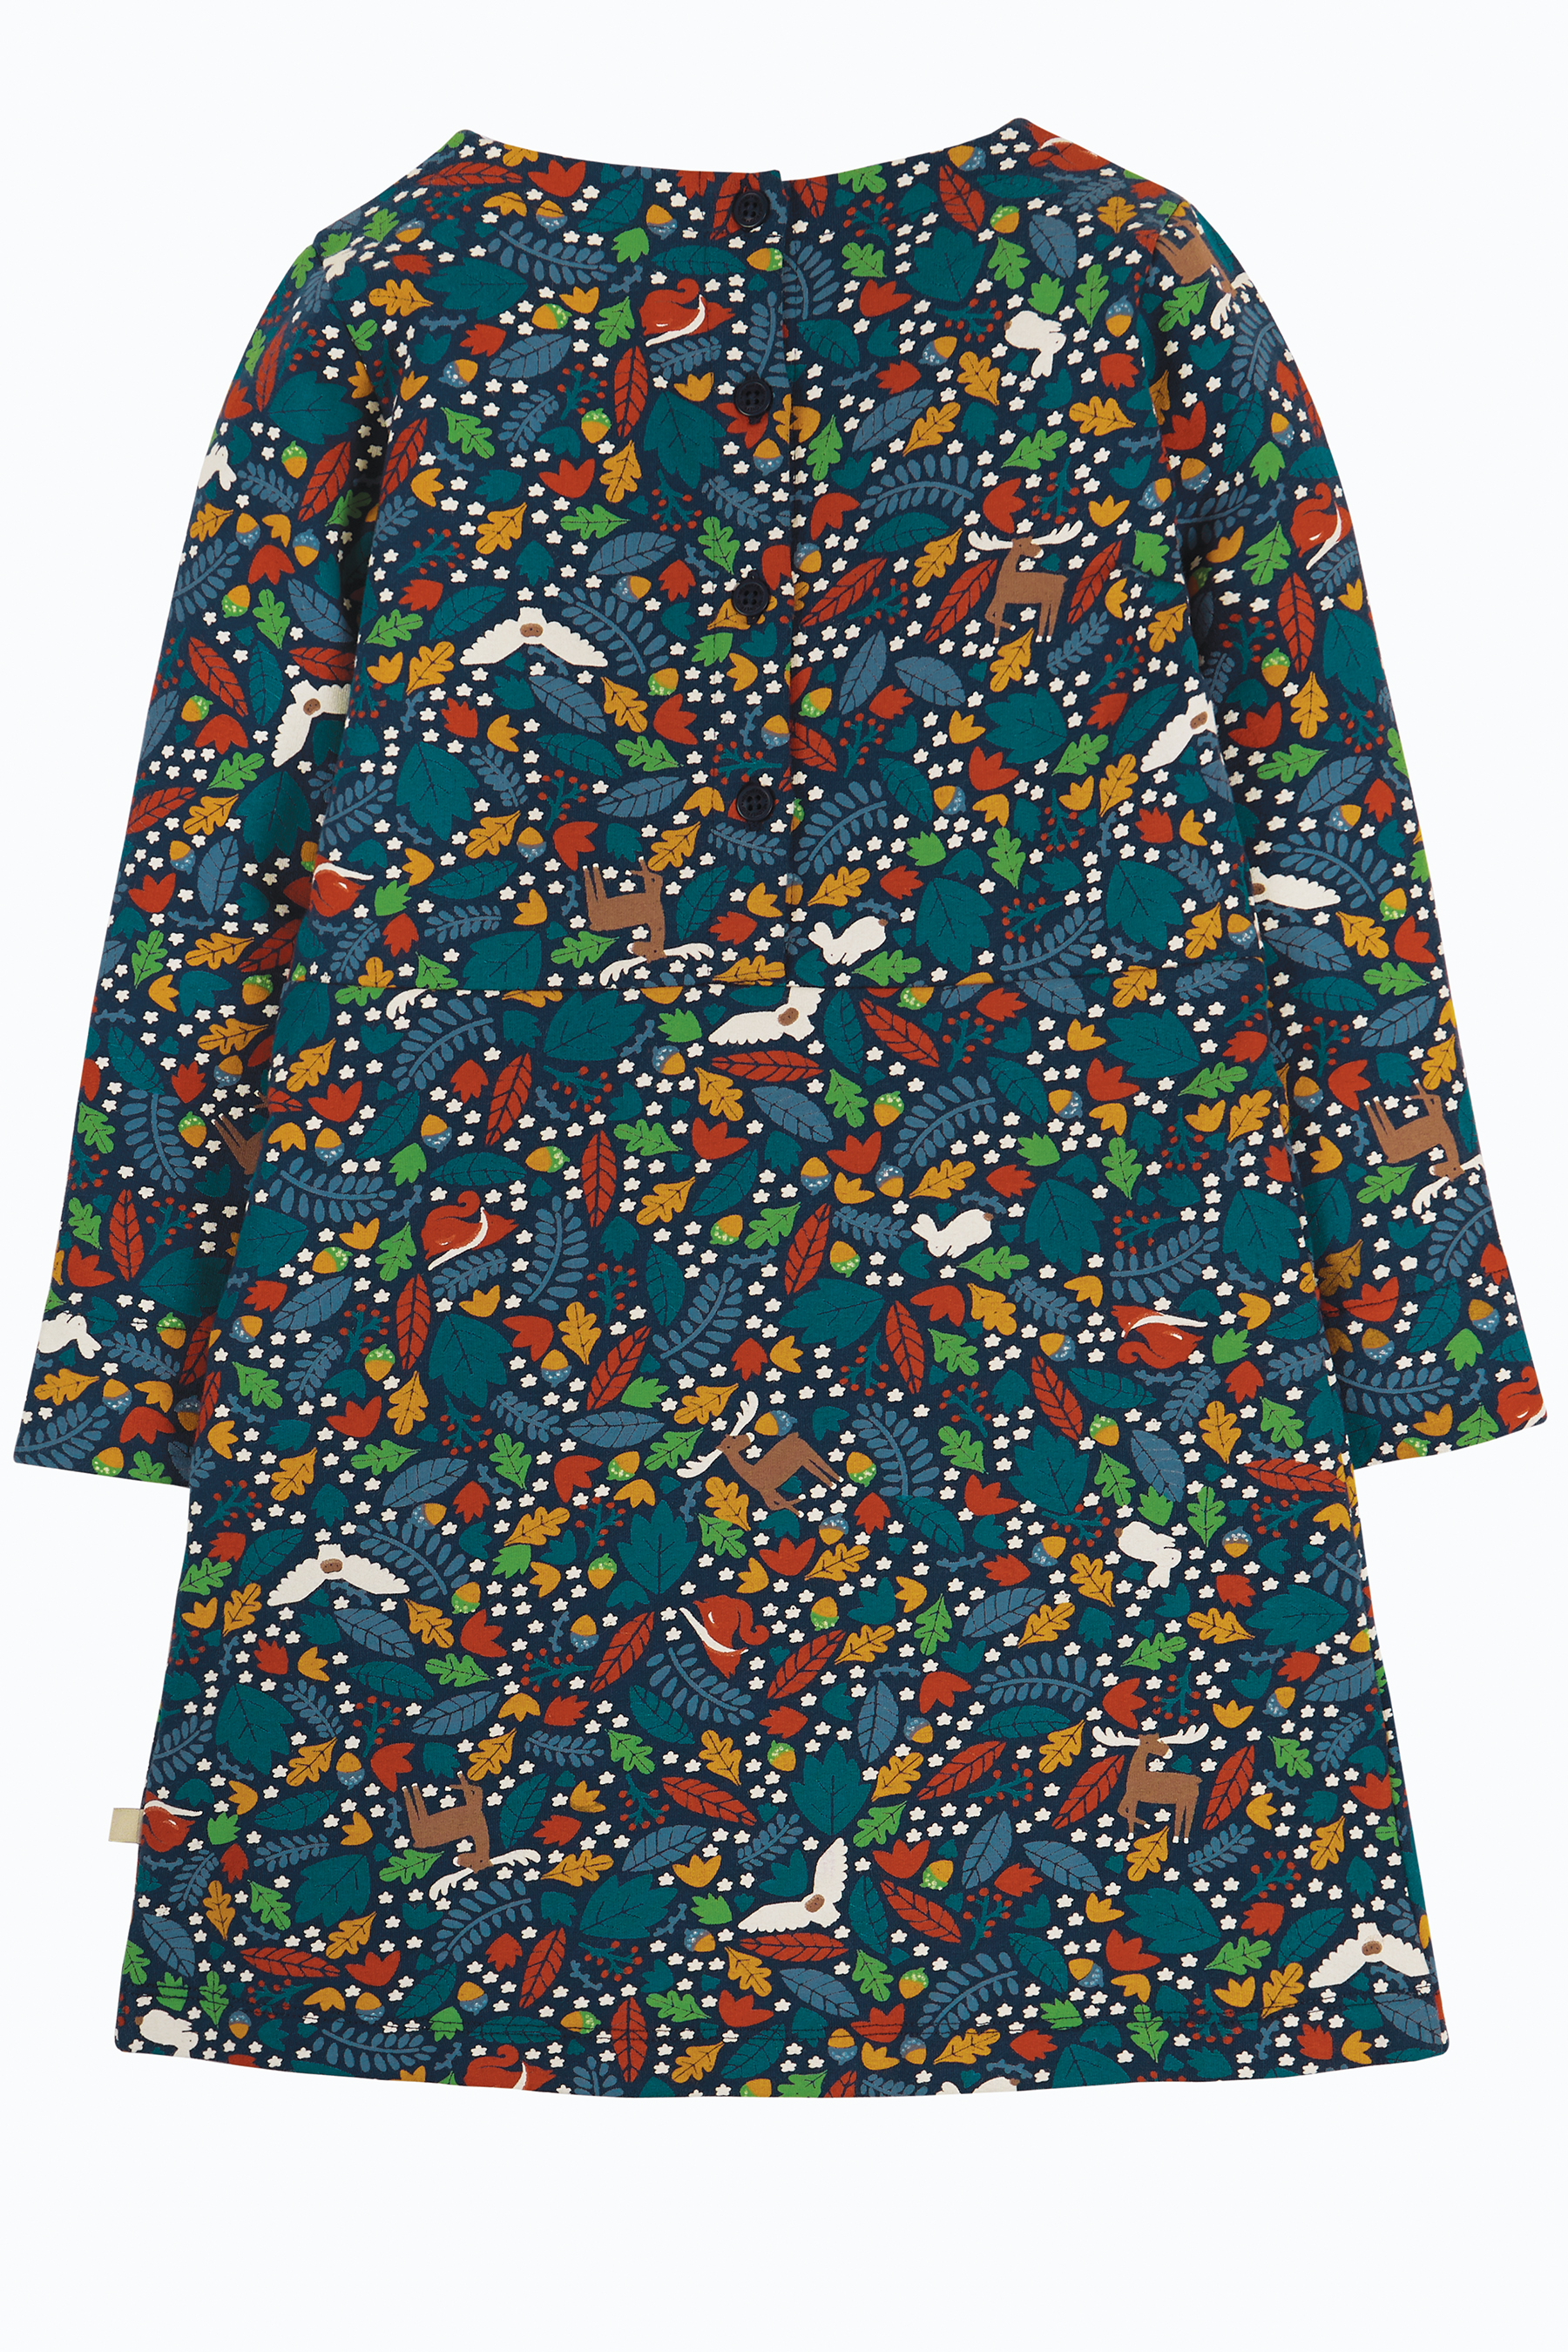 Kinder-Kleid mit Blätter- und Waldtier-Motiv